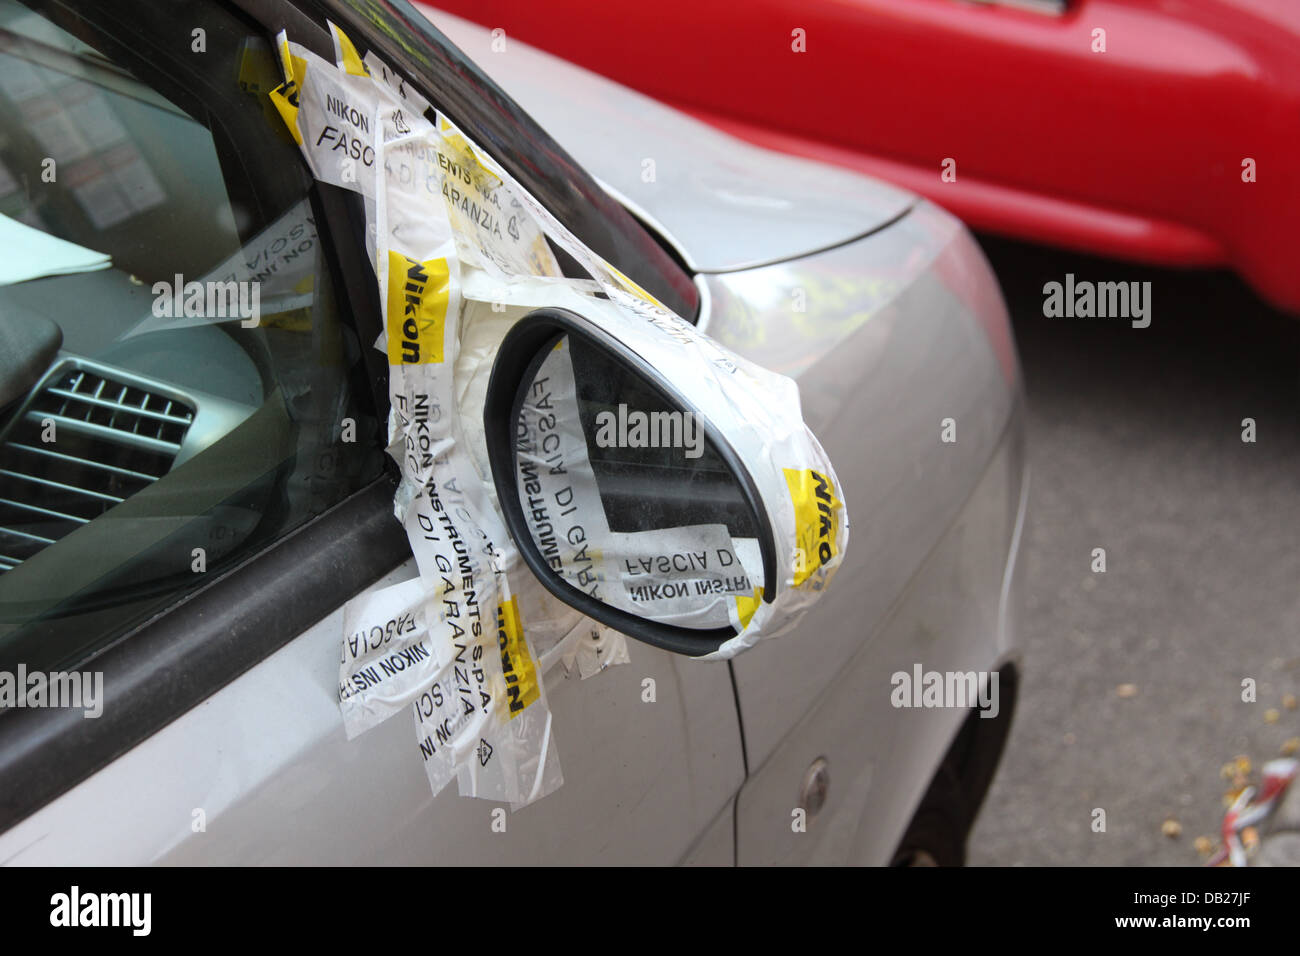 Ruban adhésif nikon utilisé pour la réparation de voiture cassée wing mirror en italie Banque D'Images